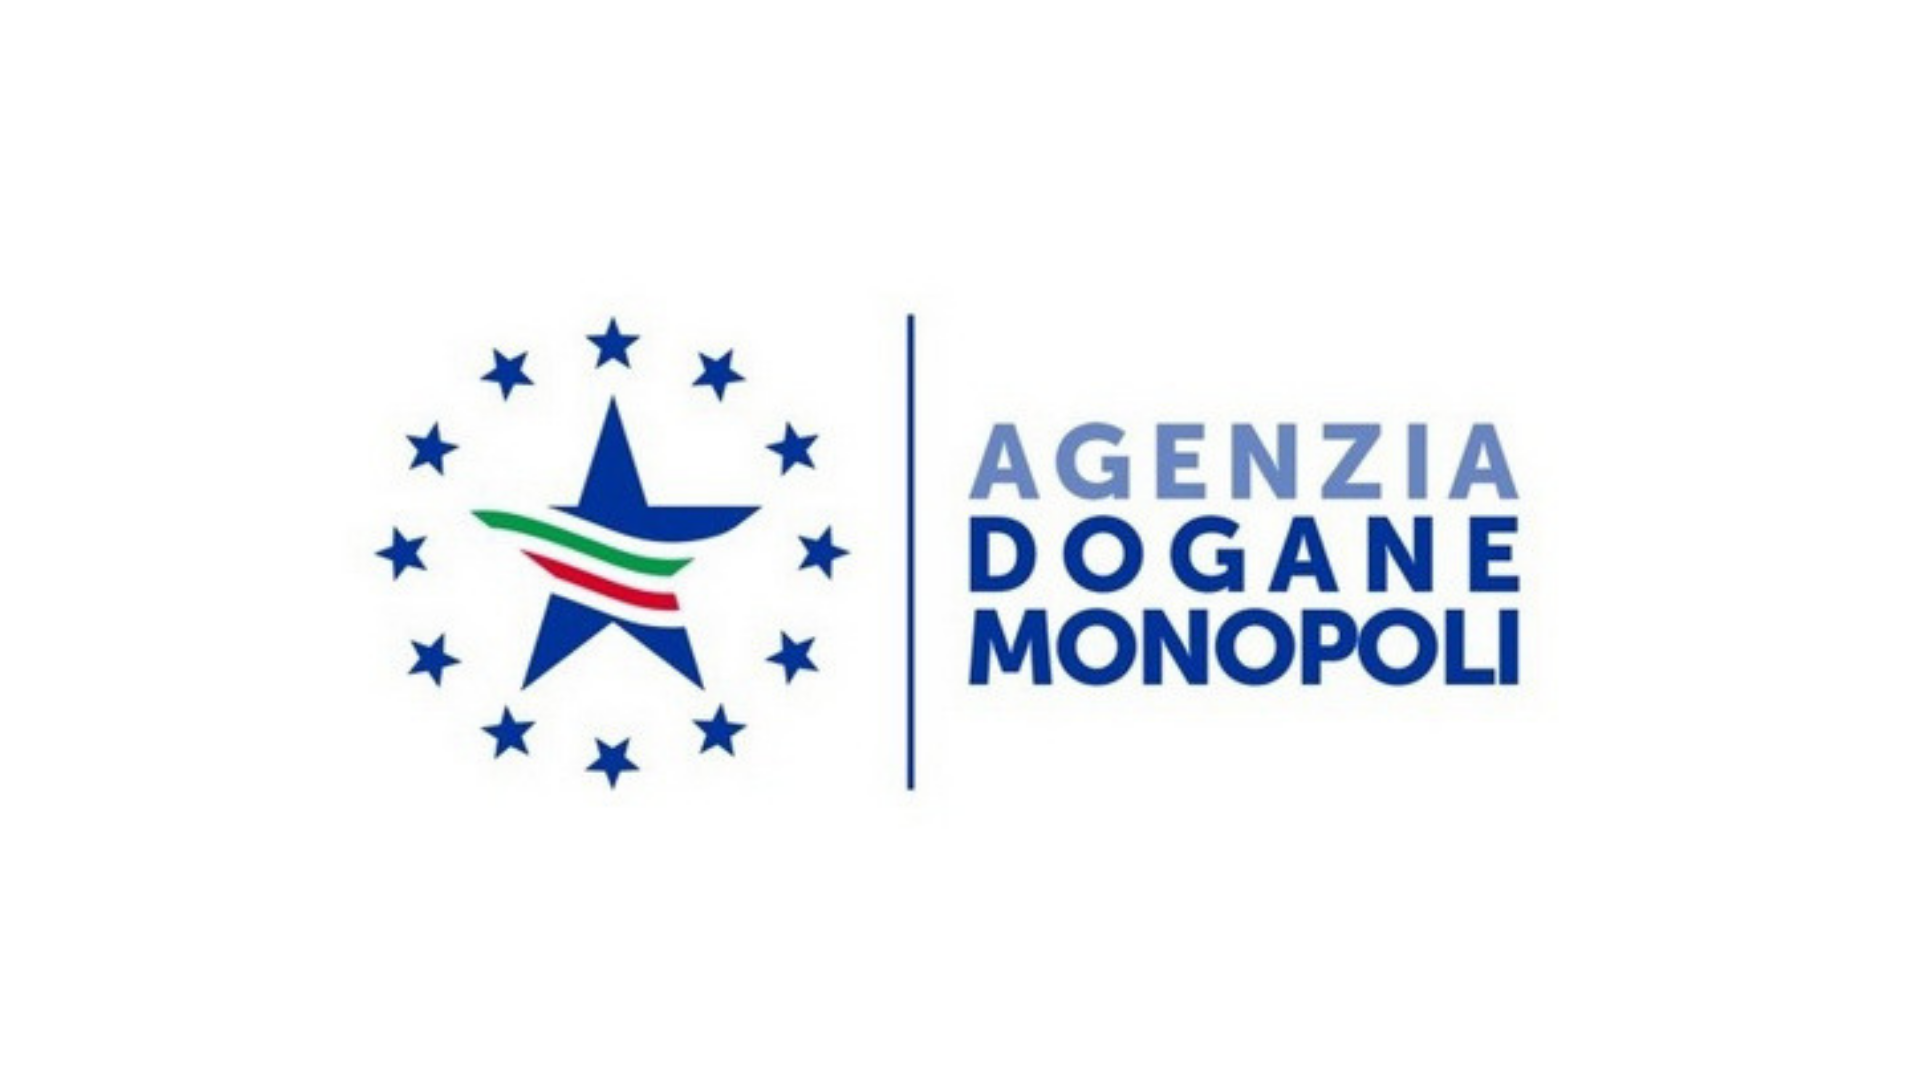 Agenzia Dogane e Monopoli v2